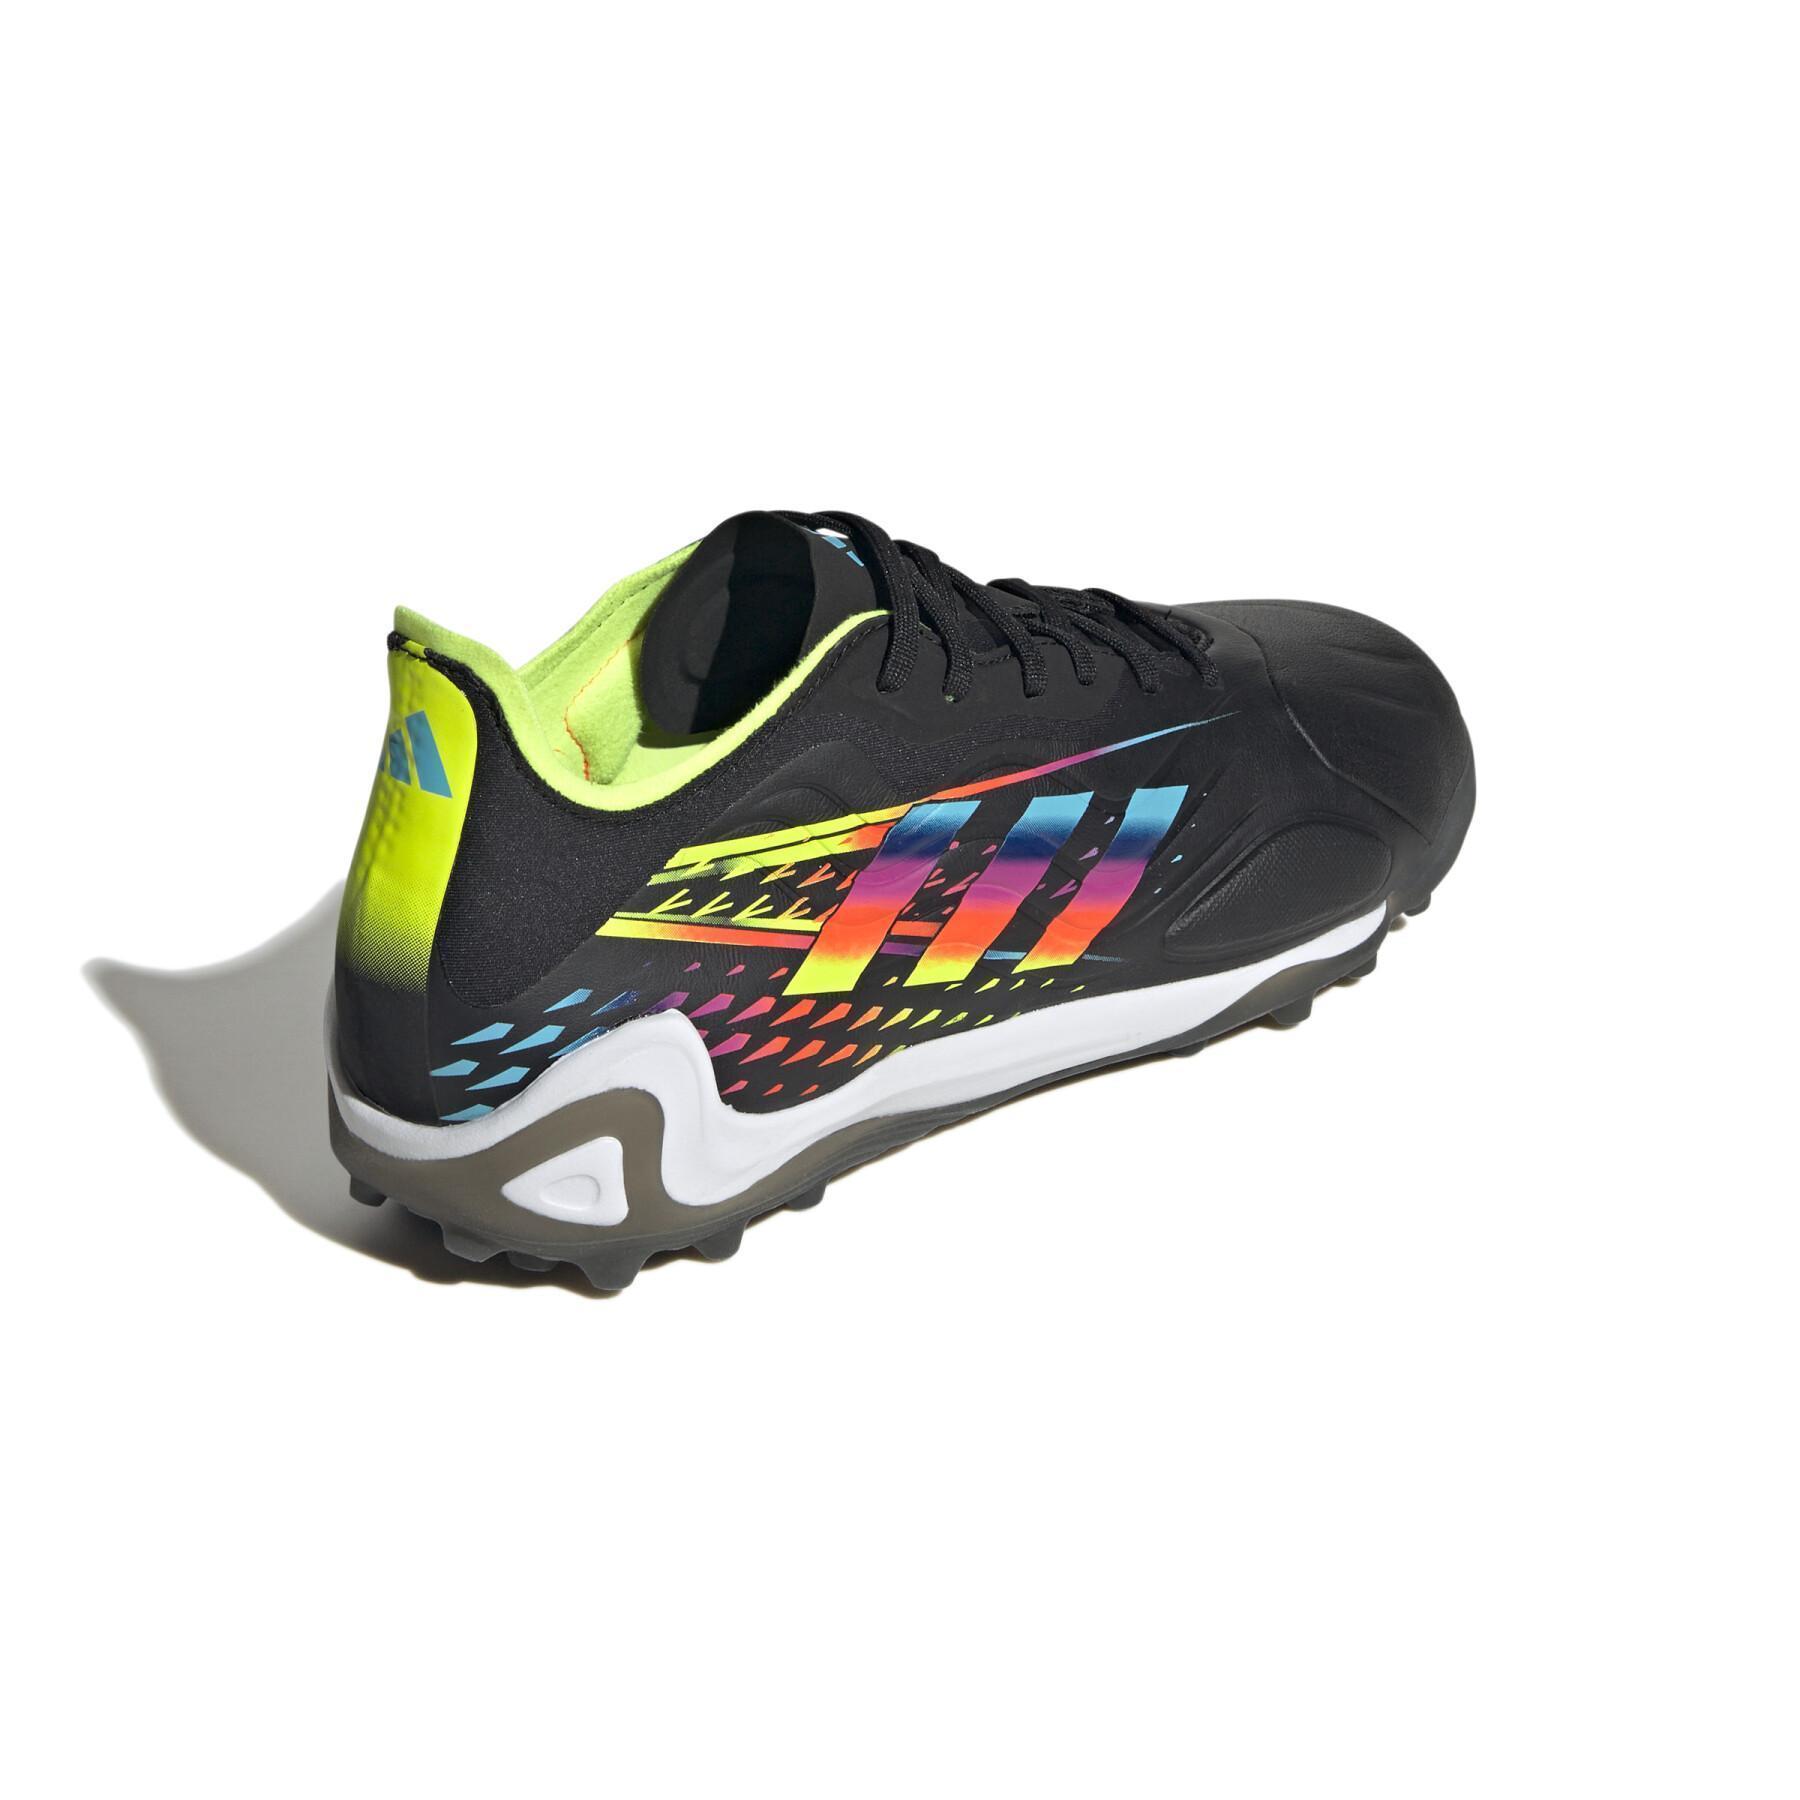 Chaussures de football adidas Copa Sense.1 TF - Al Rihla